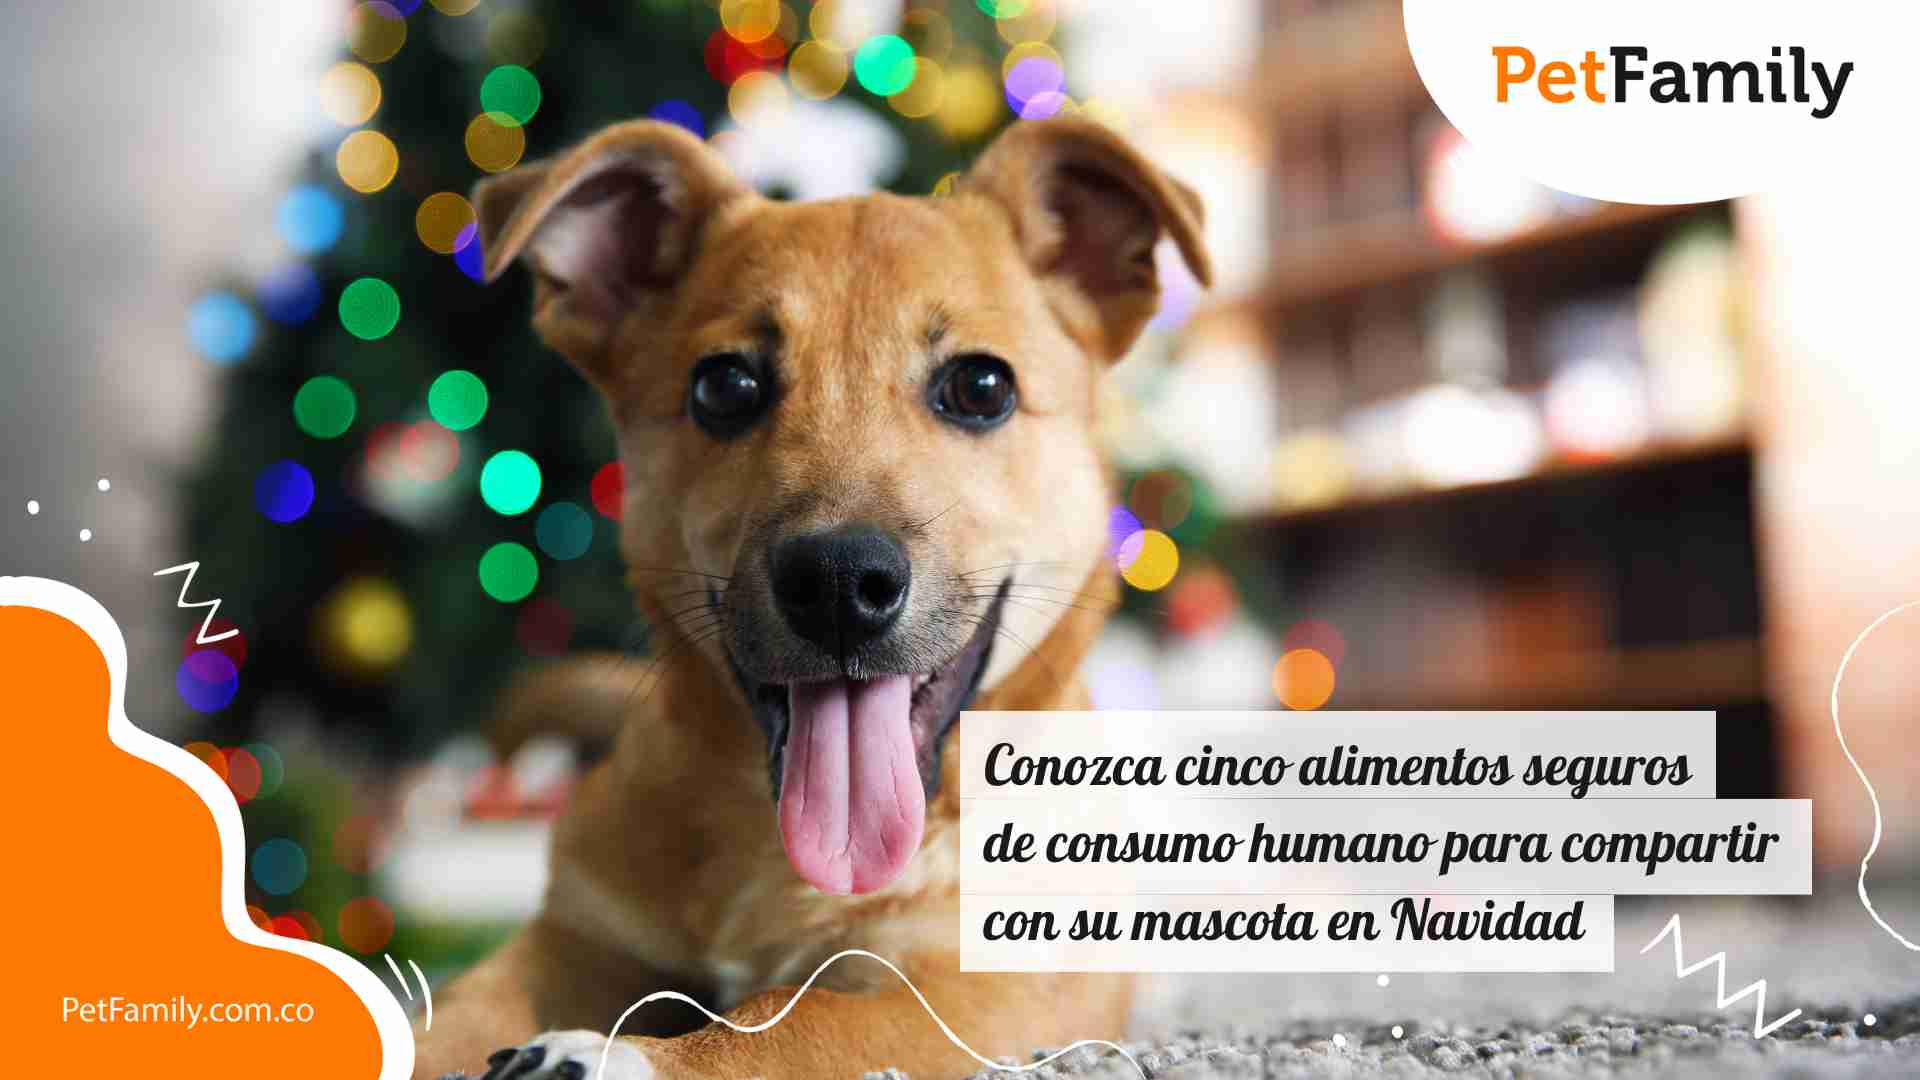 Conozca cinco alimentos seguros de consumo humano para compartir con su mascota en Navidad